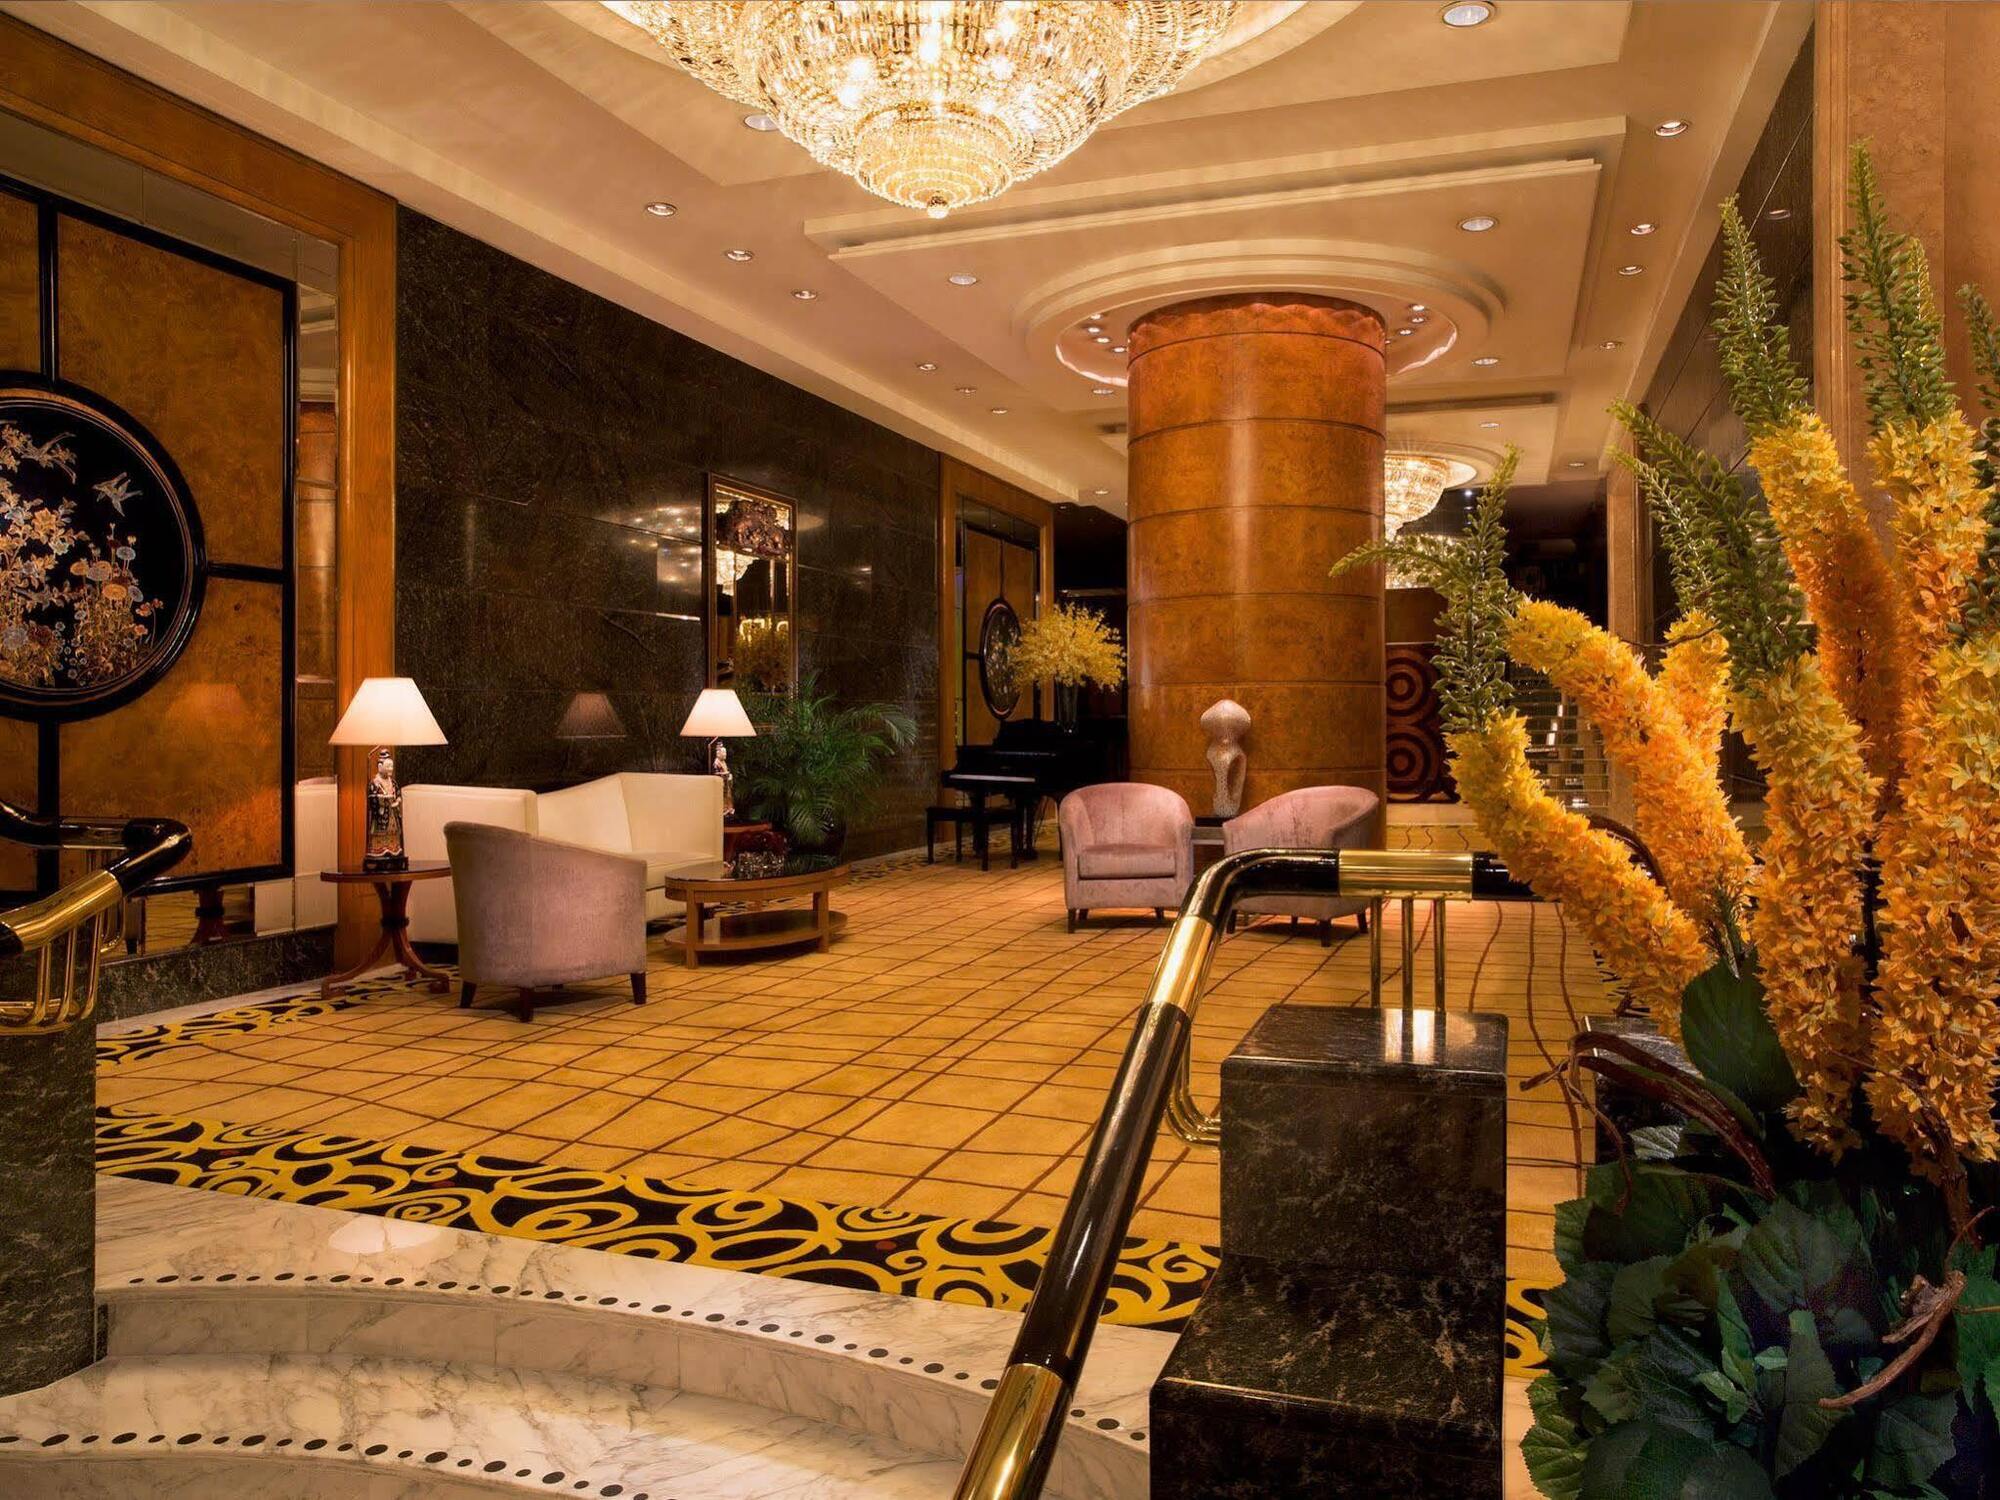 The Royal Pacific Hotel & Towers Hong Kong Exterior foto